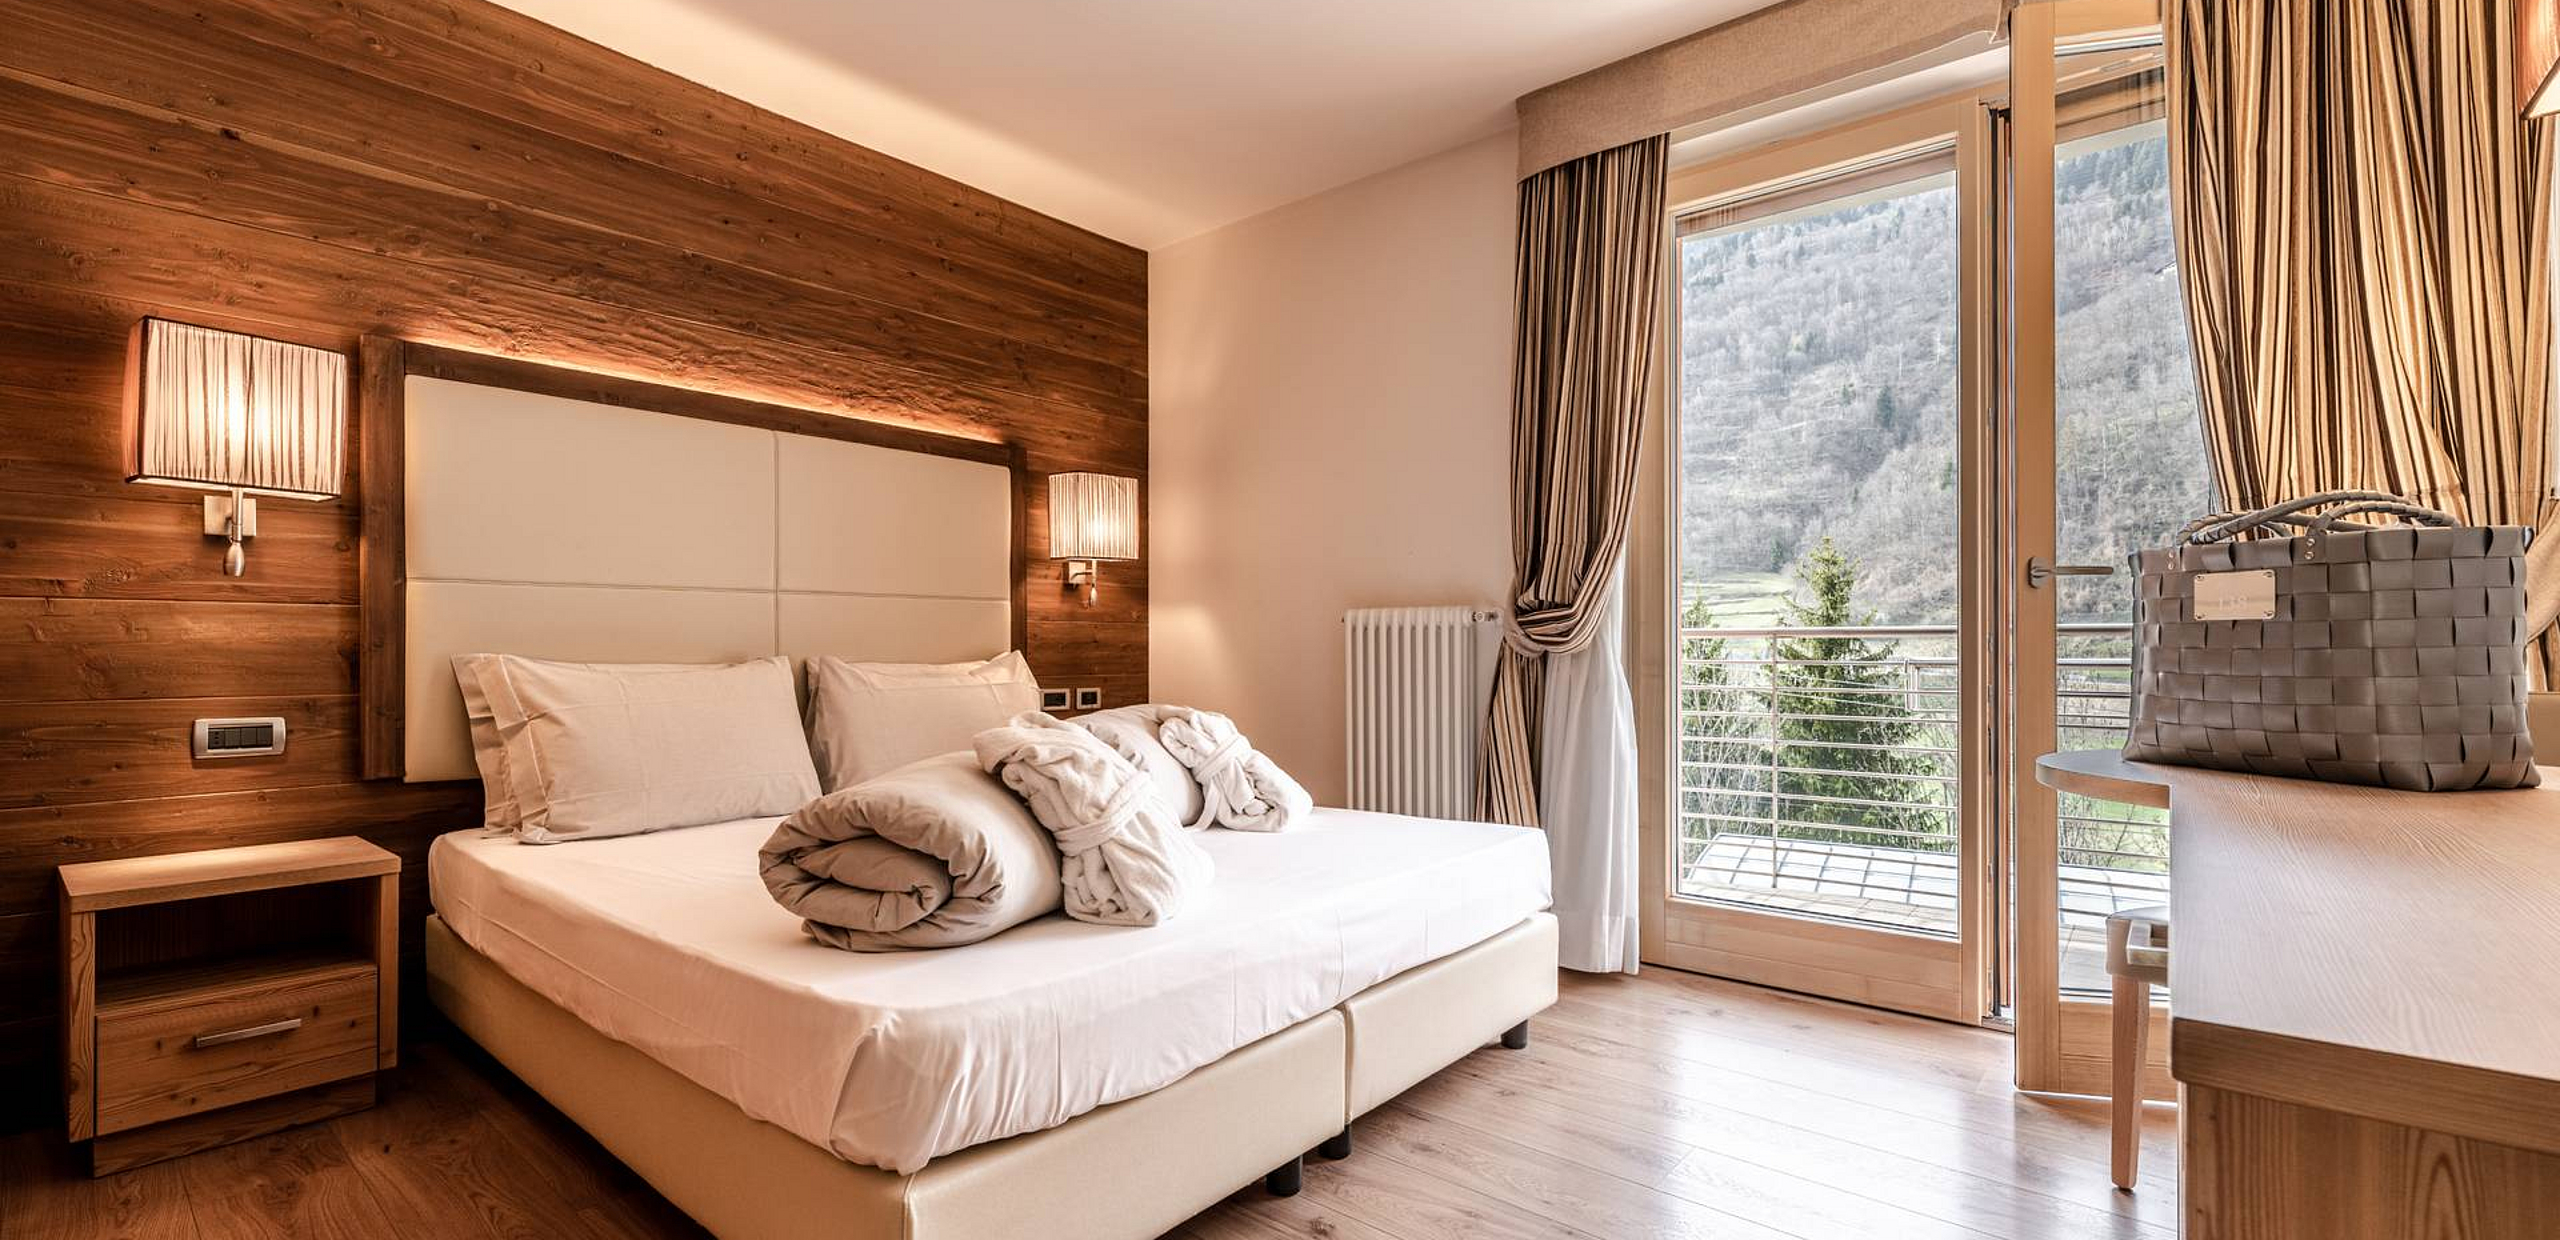 Double room with balcony, Mezzana, Trentino